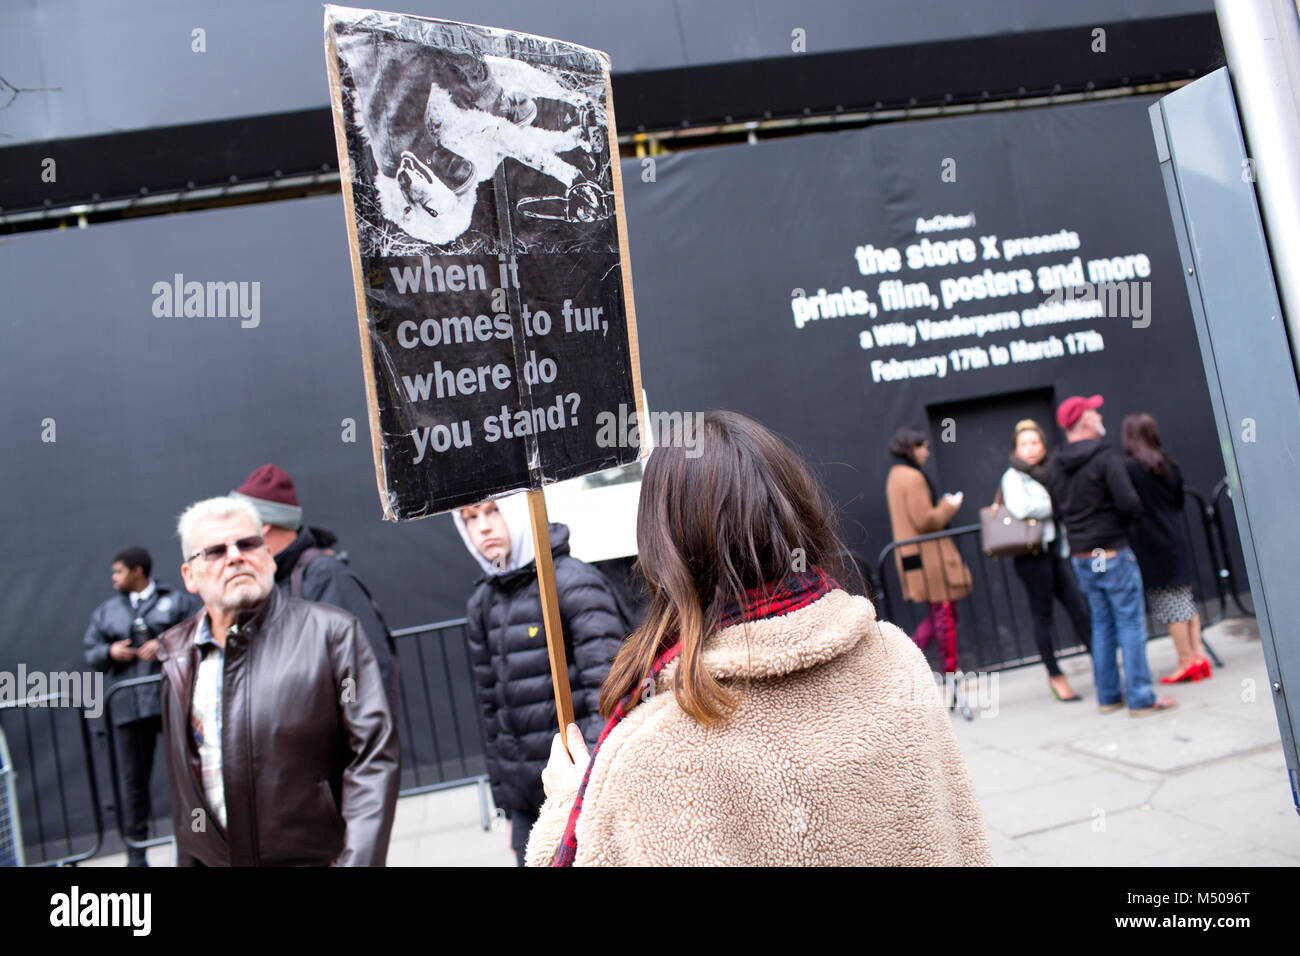 Londres, Reino Unido. El 17 de febrero de 2018, los defensores de los derechos de los animales protestan contra el uso de las pieles de animales en la industria de la moda fuera de la sede de la Semana de la Moda de Londres. Mariusz Goslicki/Alamy Live News Foto de stock